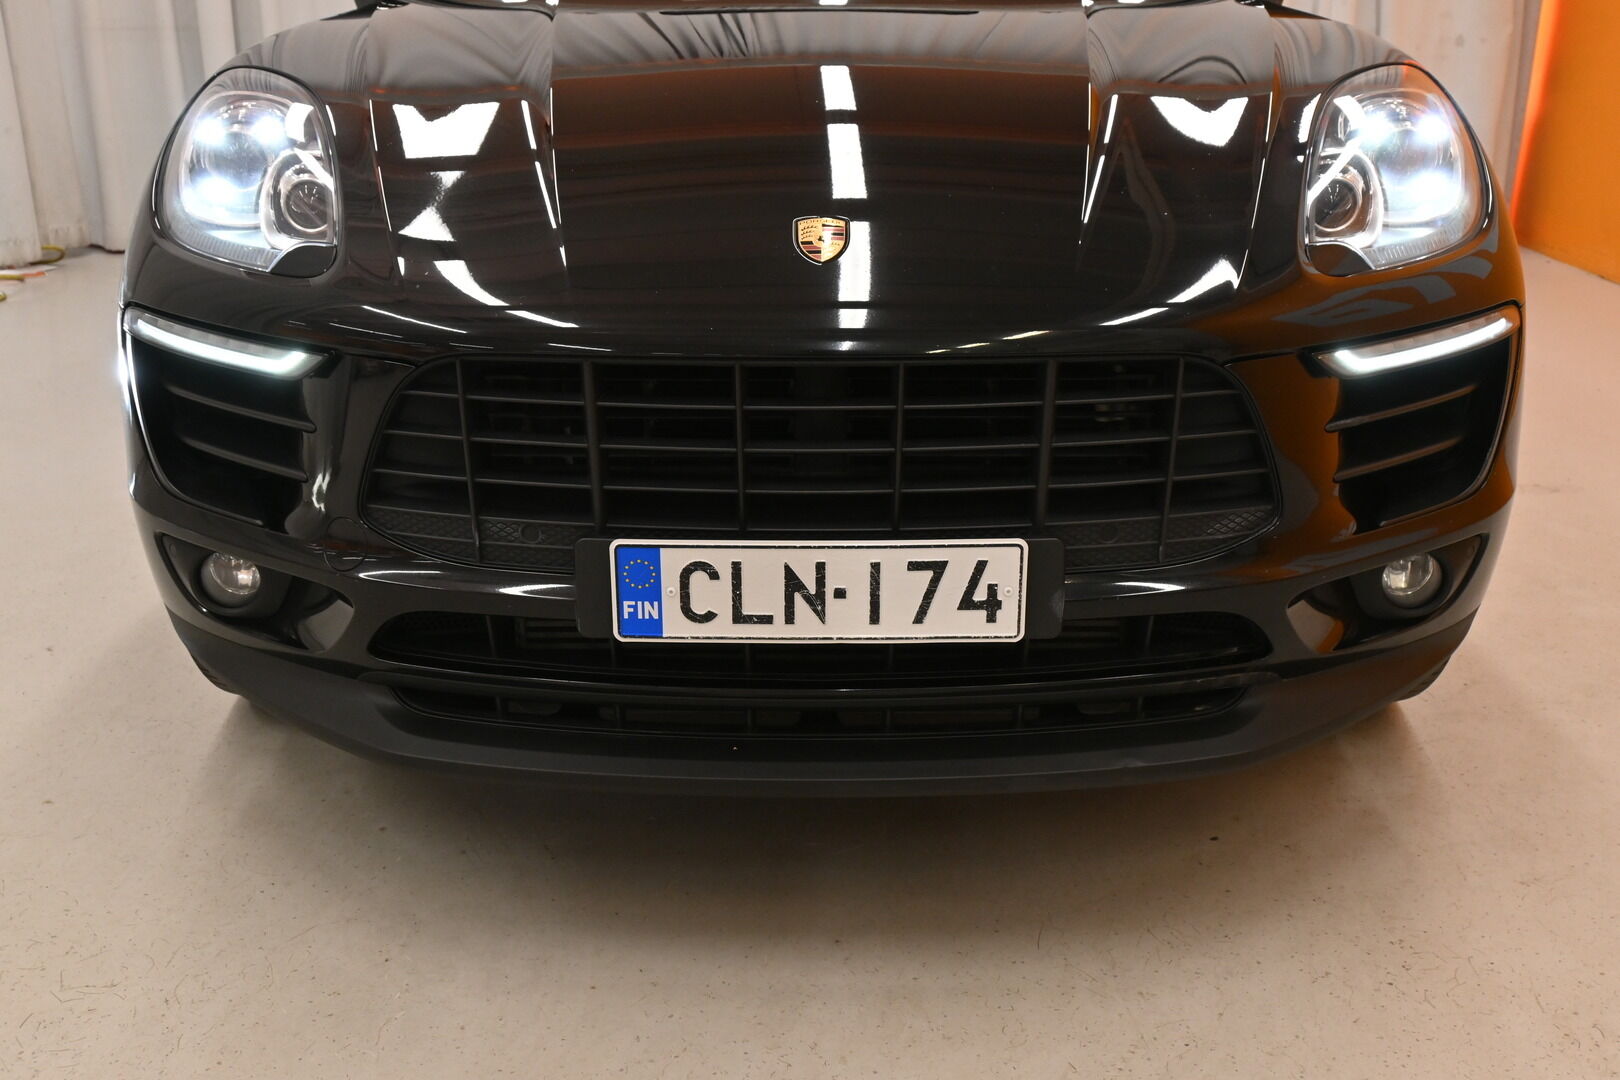 Musta Maastoauto, Porsche Macan – CLN-174